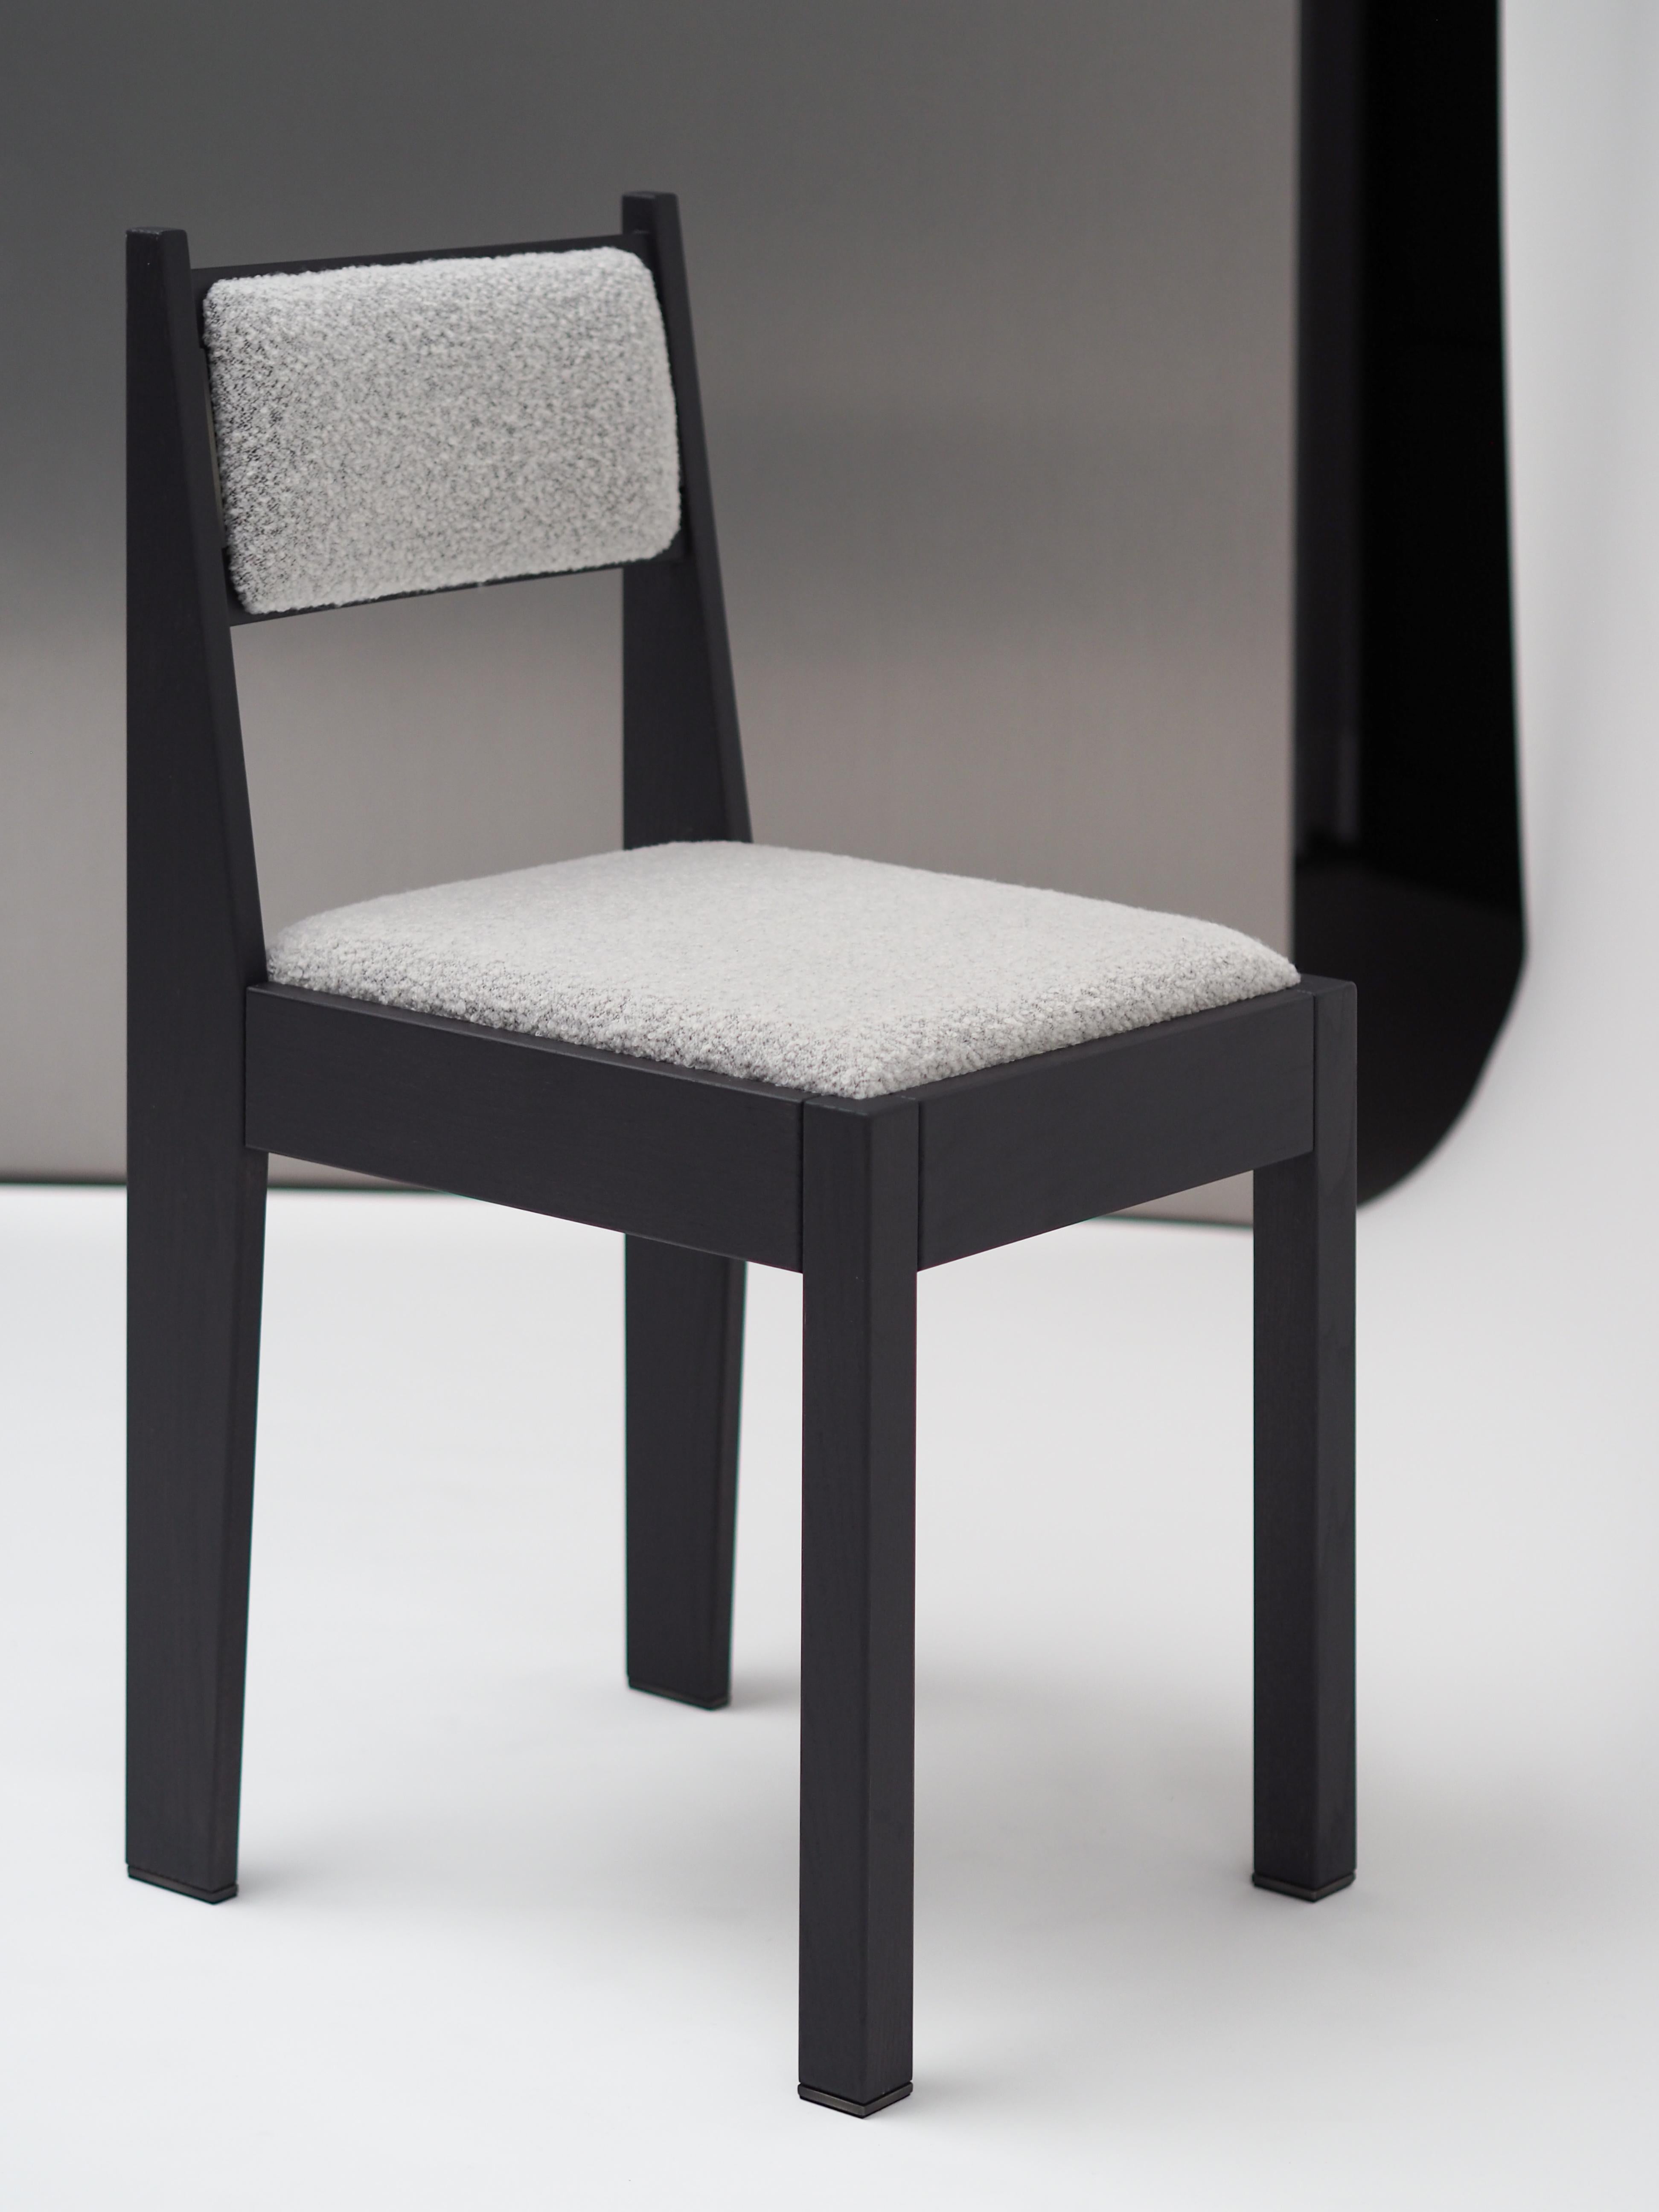 Unser barh Stuhl 01 ist ein klassisches, modernes Design mit feinsten Details. Der von der Art-Déco-Bewegung inspirierte Stuhl sieht vertraut aus, was ihn zeitlos macht und zu fast jeder Einrichtung passt. Um das Gesamtbild von barh zu